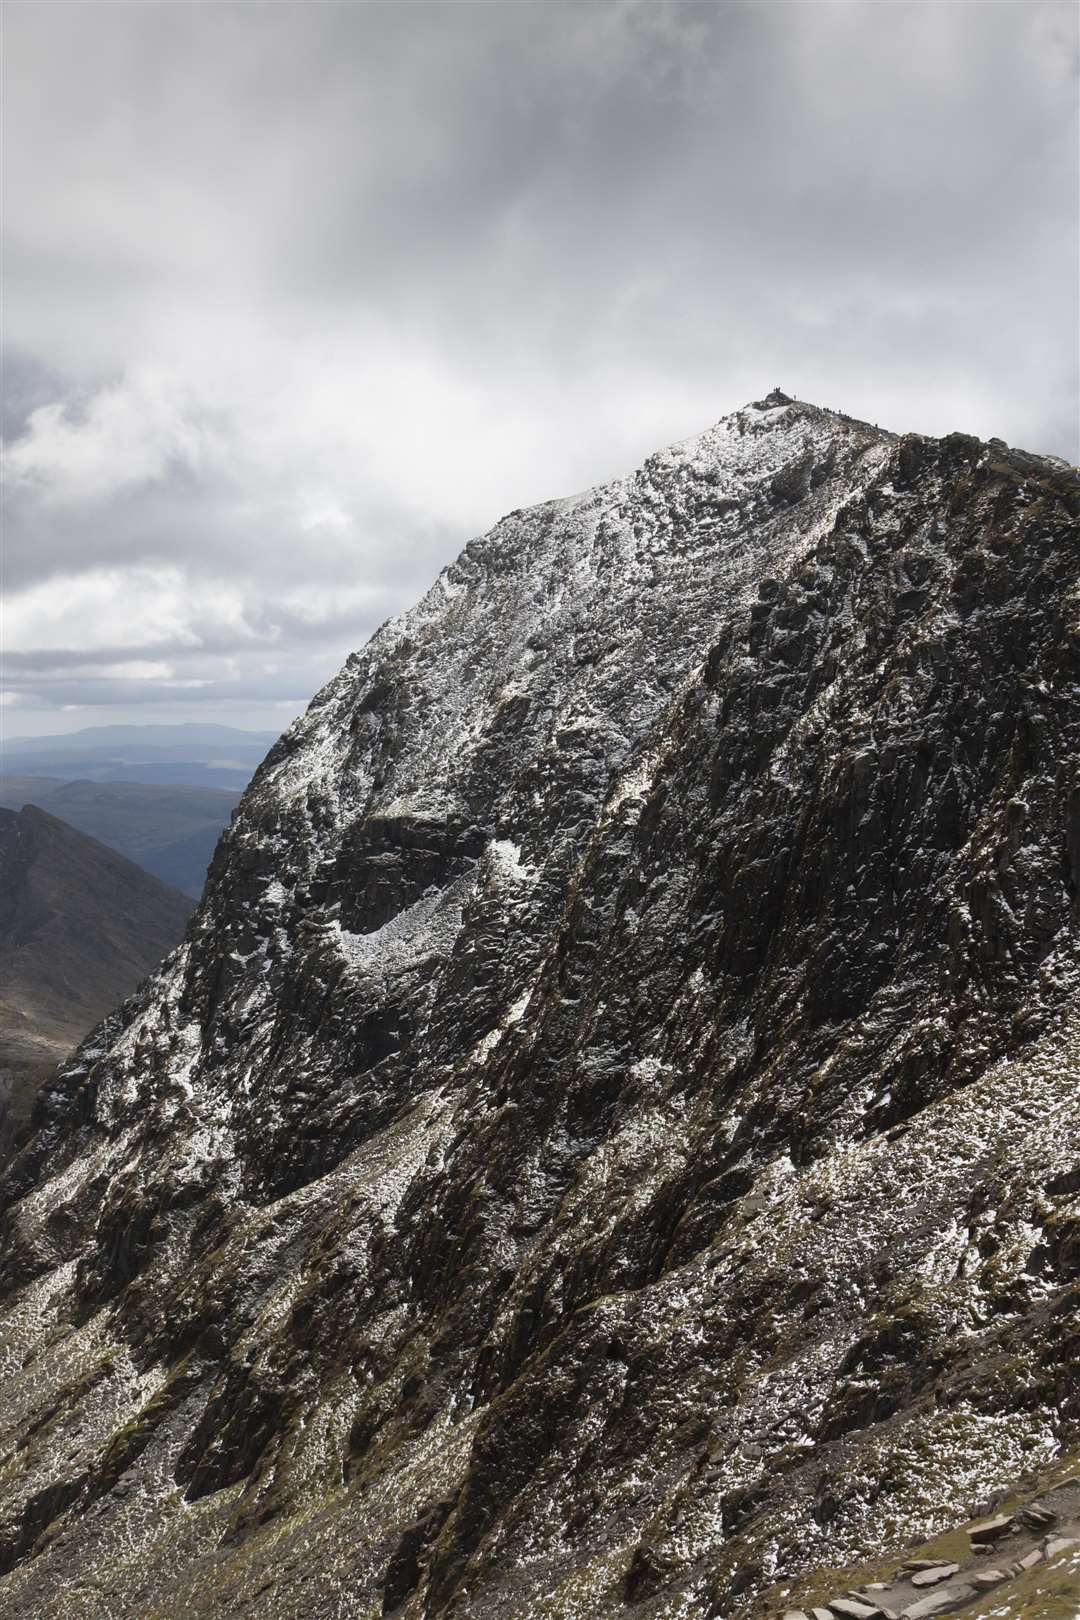 The summit of Mount Snowdon.